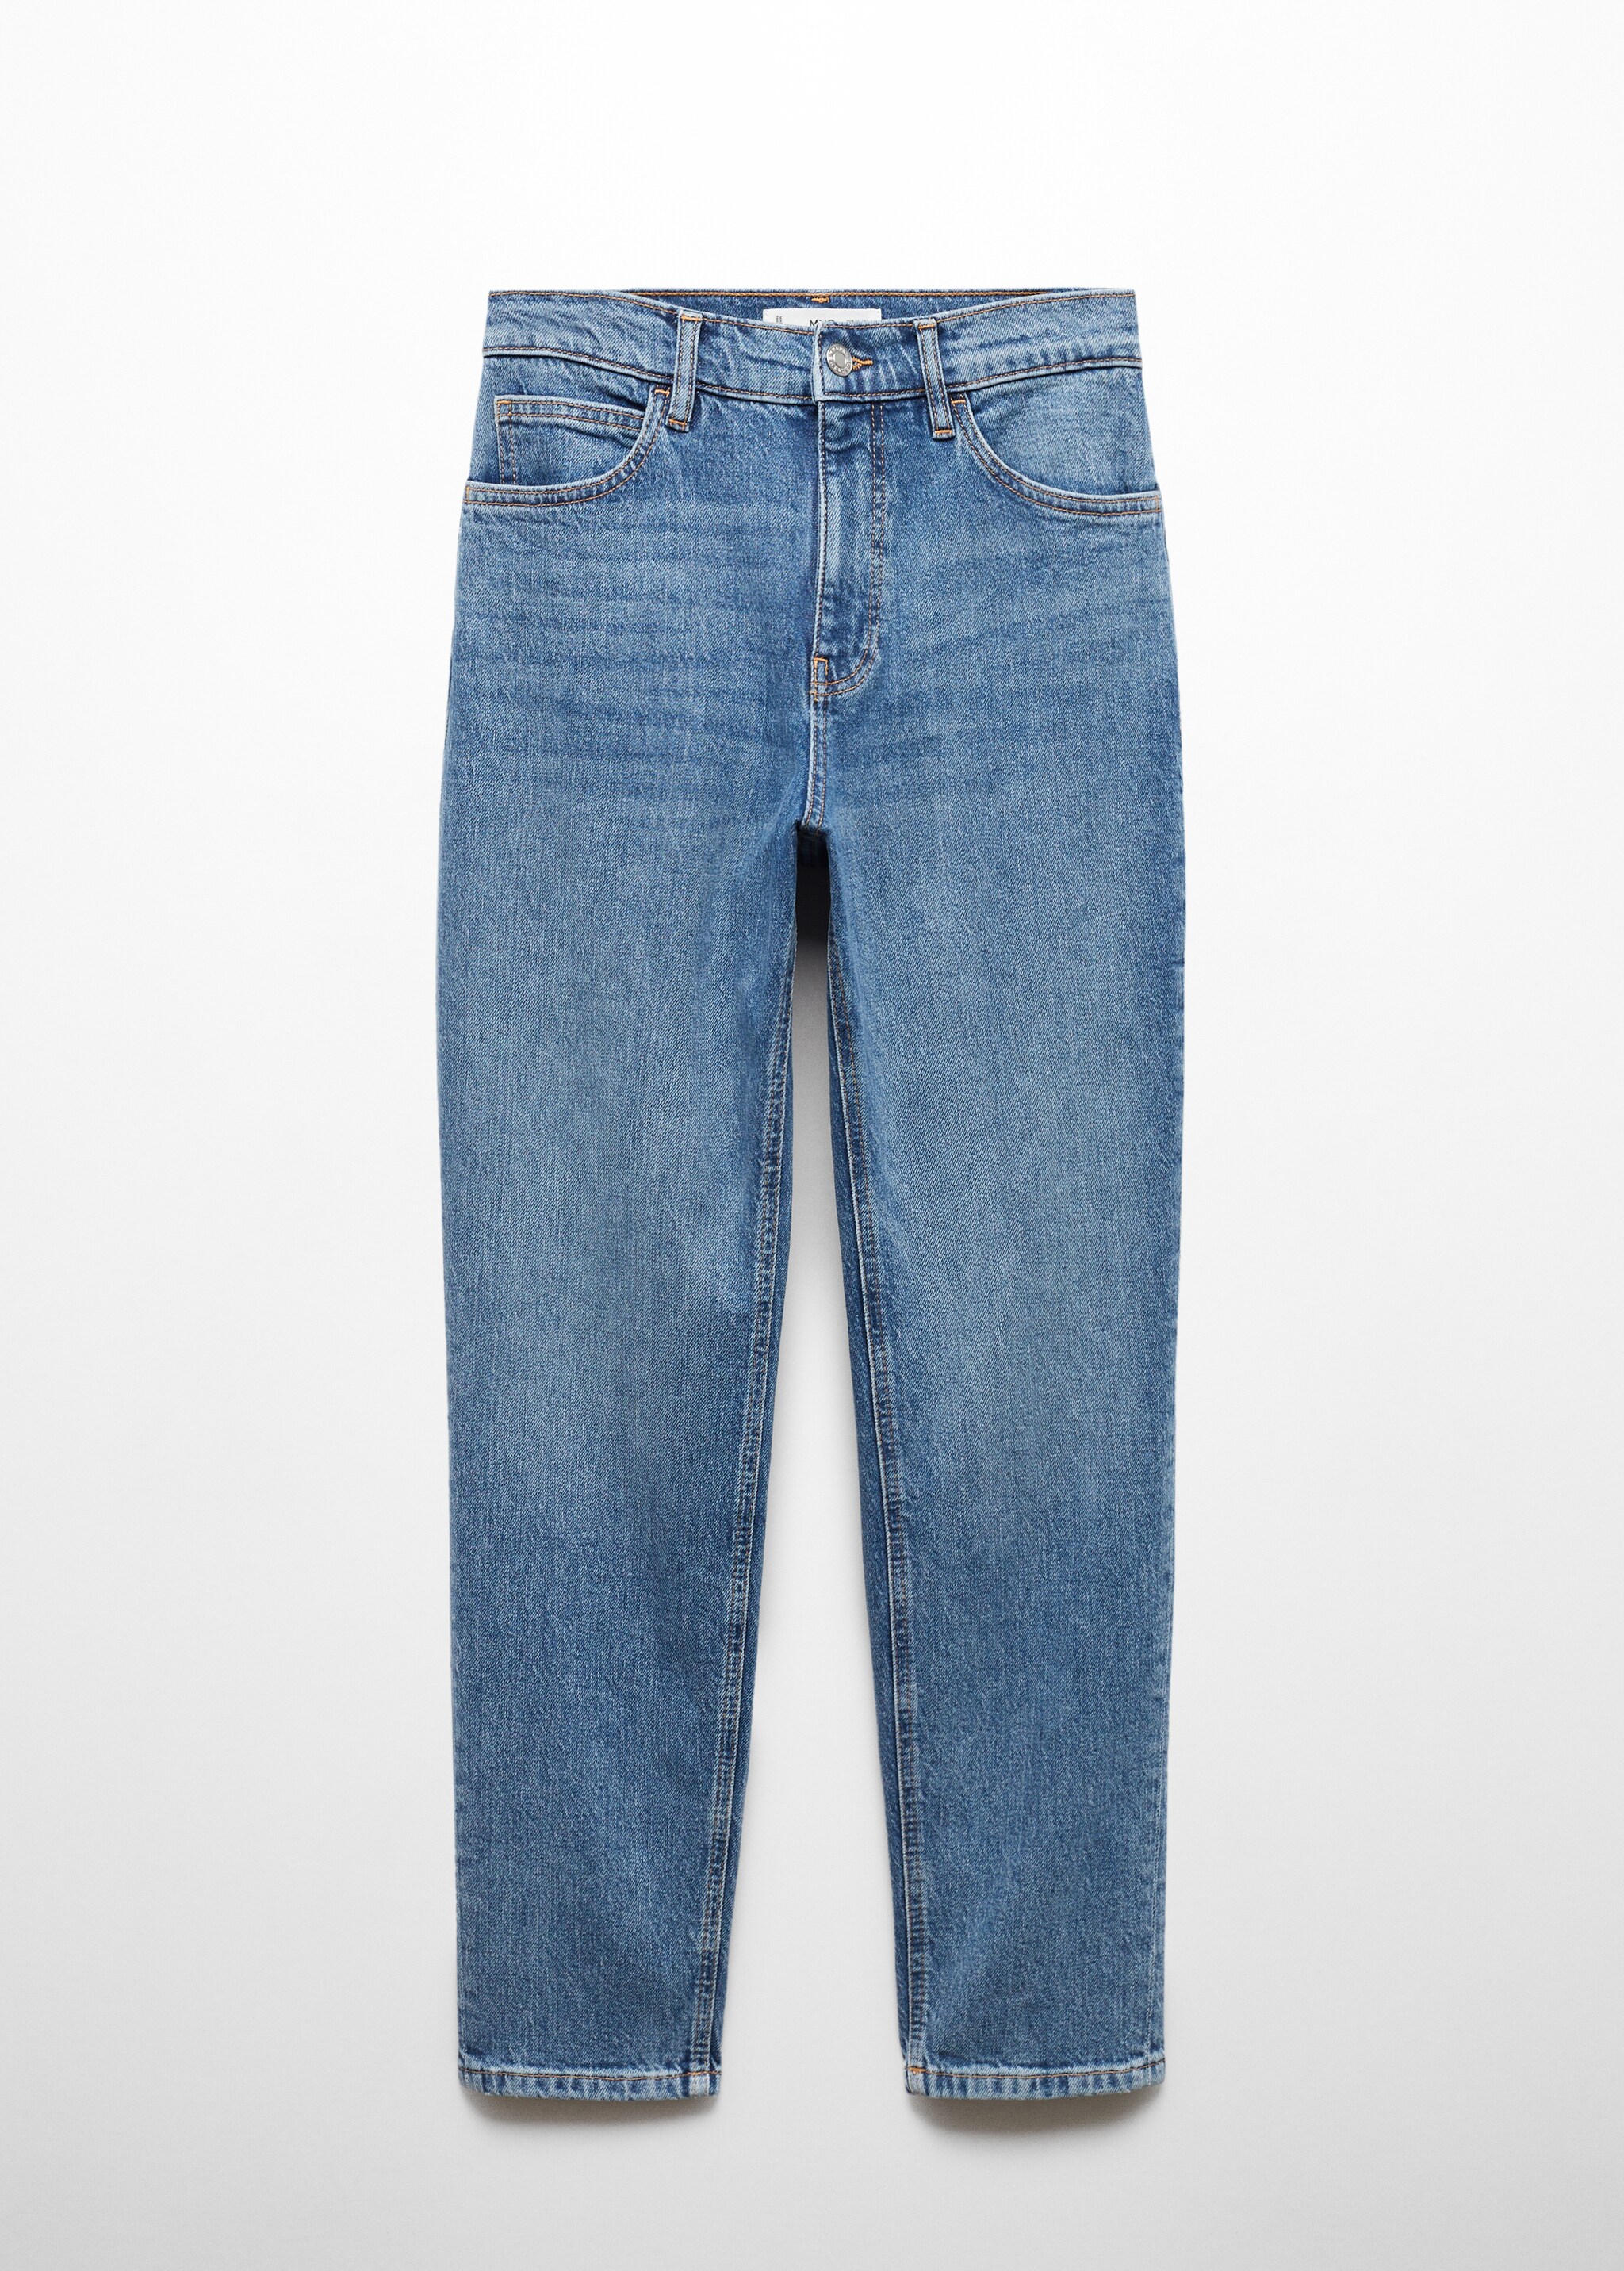 Jeans Newmom comfort vita alta - Articolo senza modello